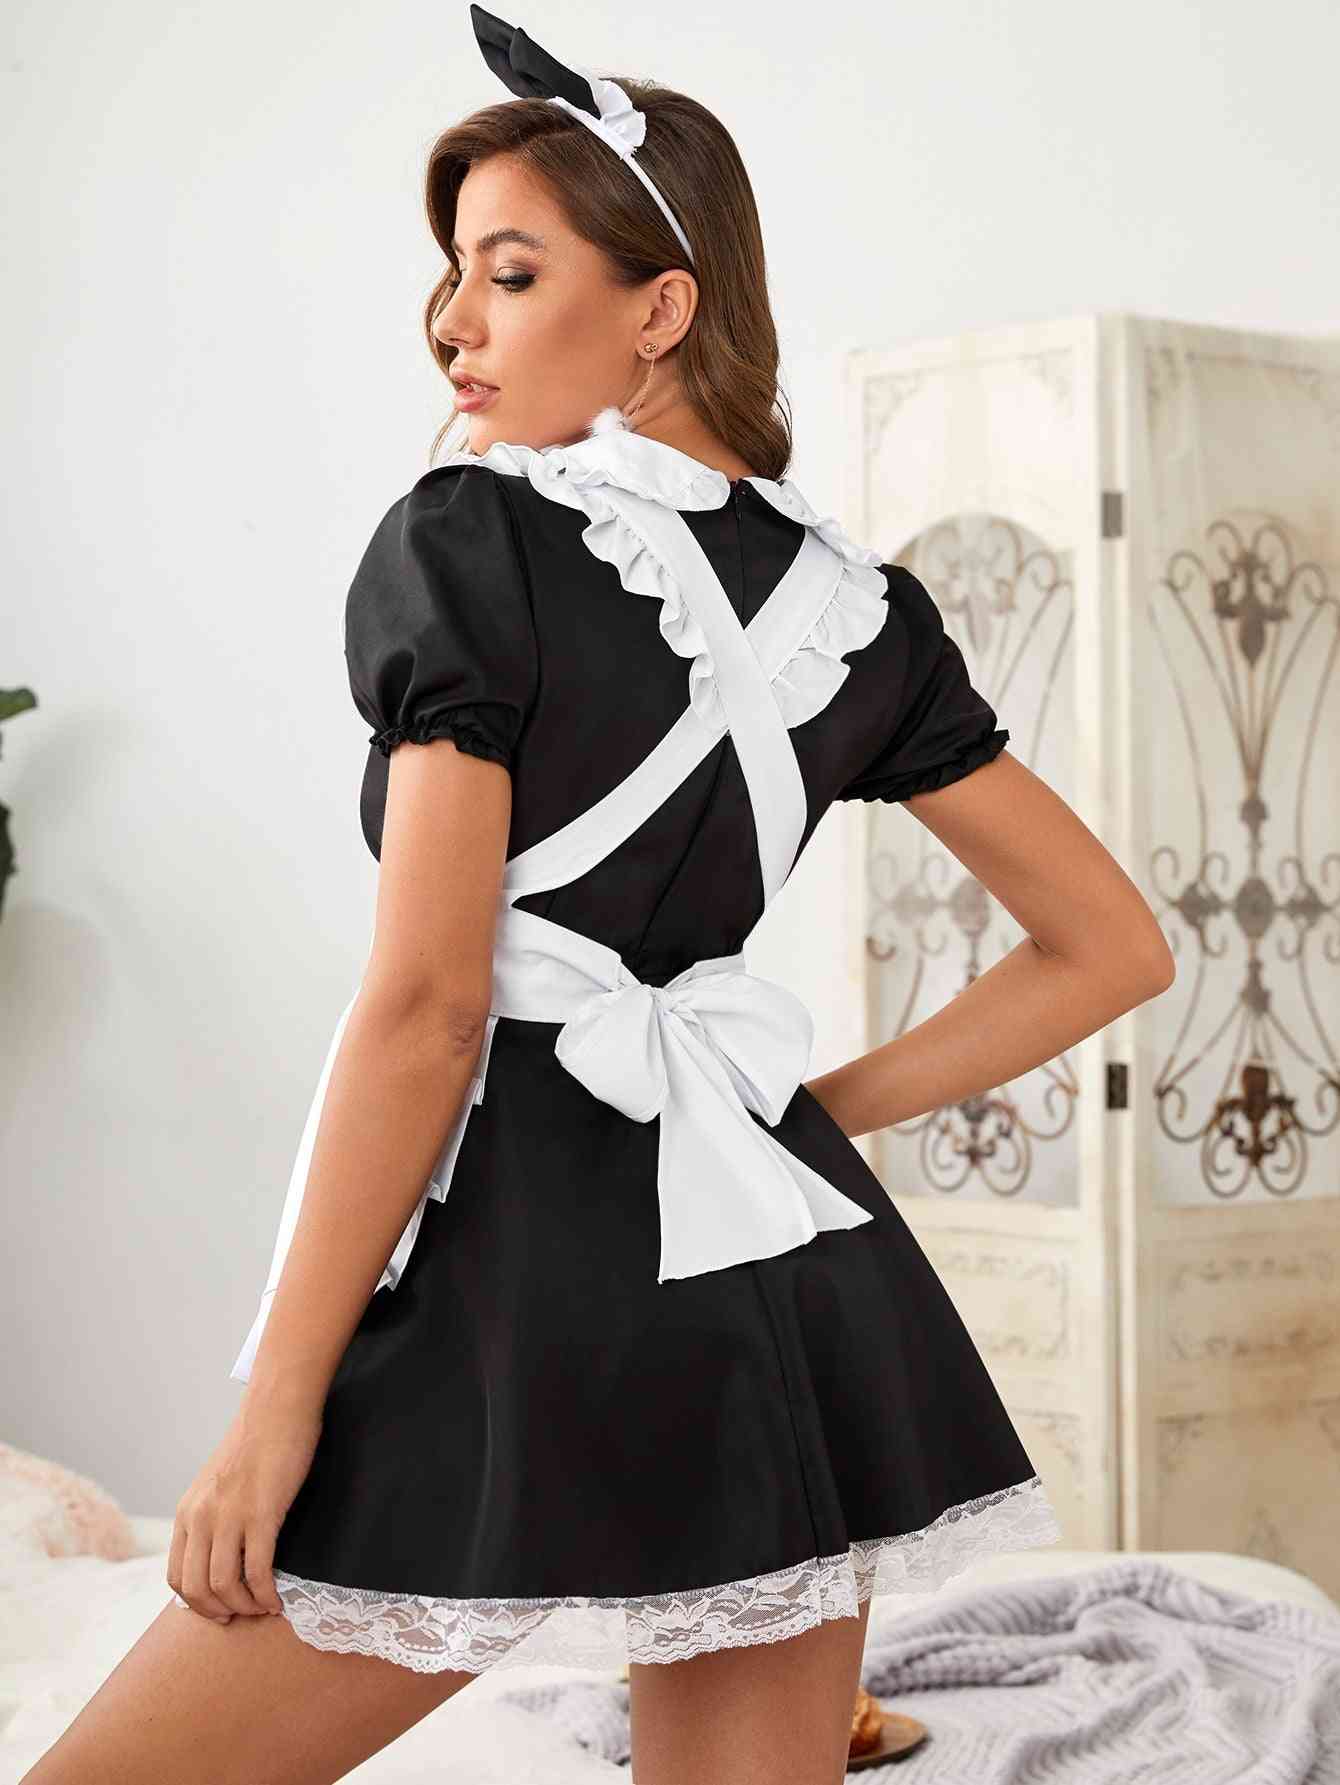 Ruffle Trim Maid Costume Dress Headband 3-pack1